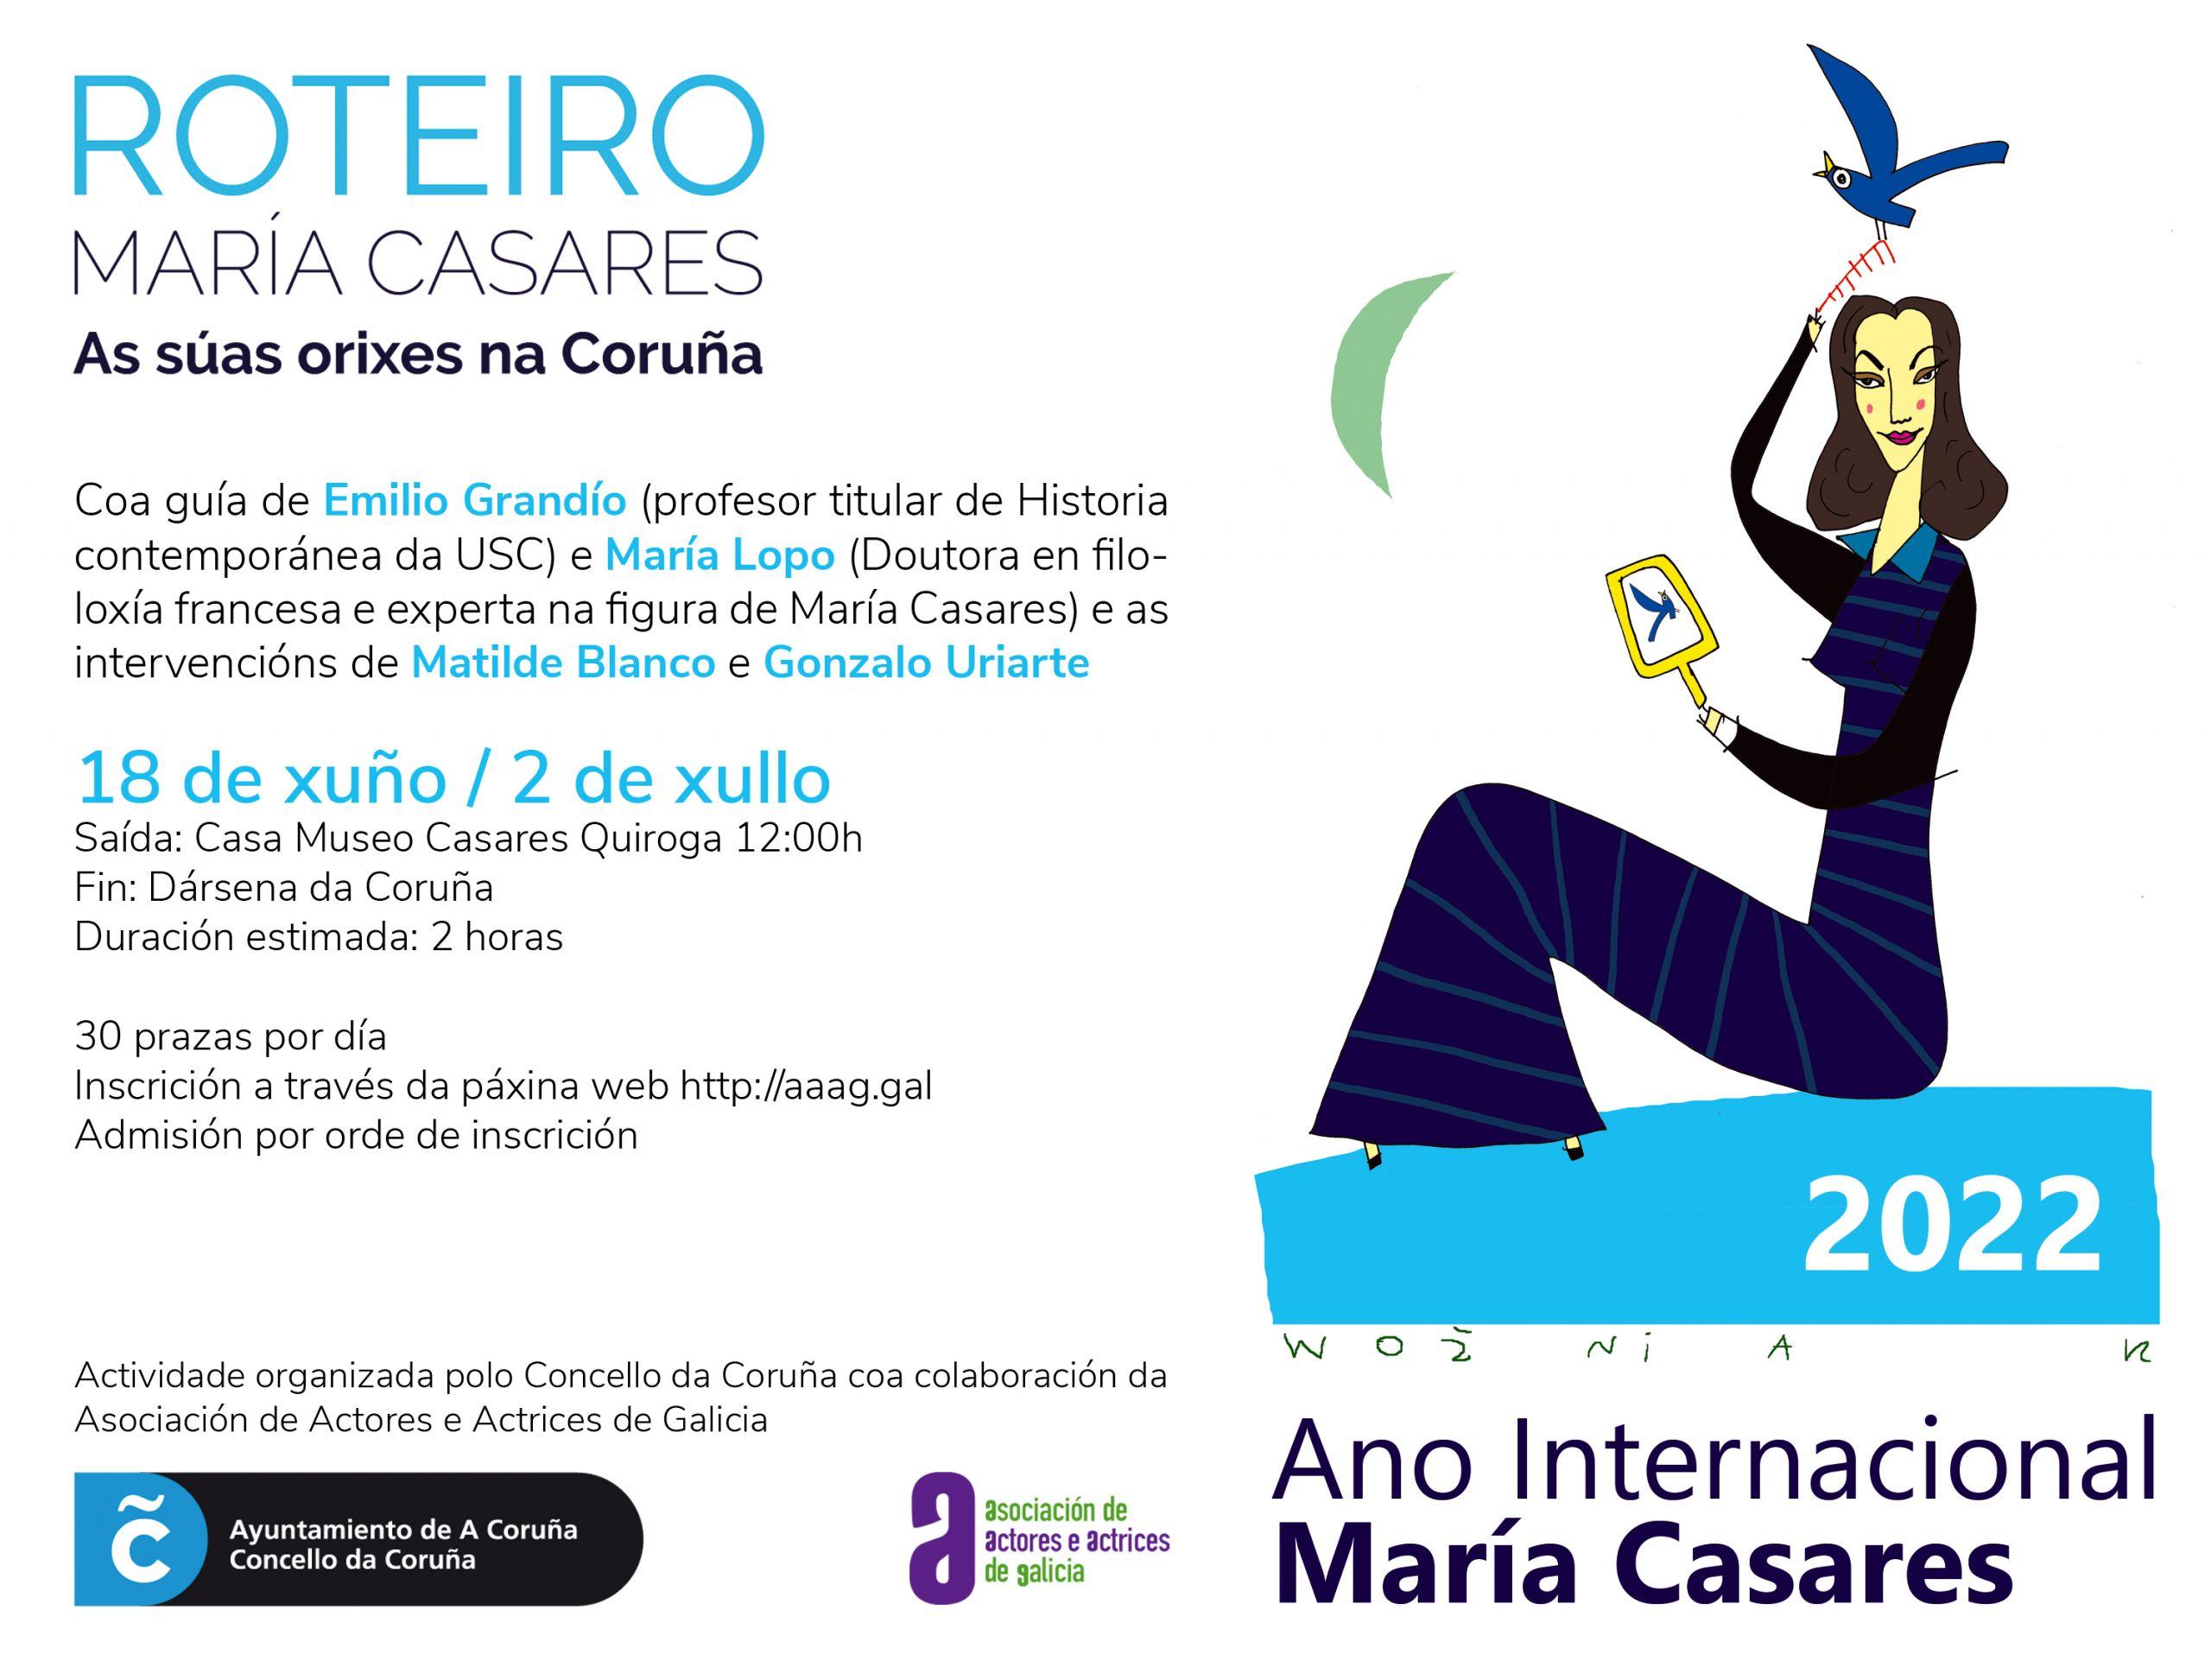 Promoción de las rutas sobre María Casares (Concello da Coruña).